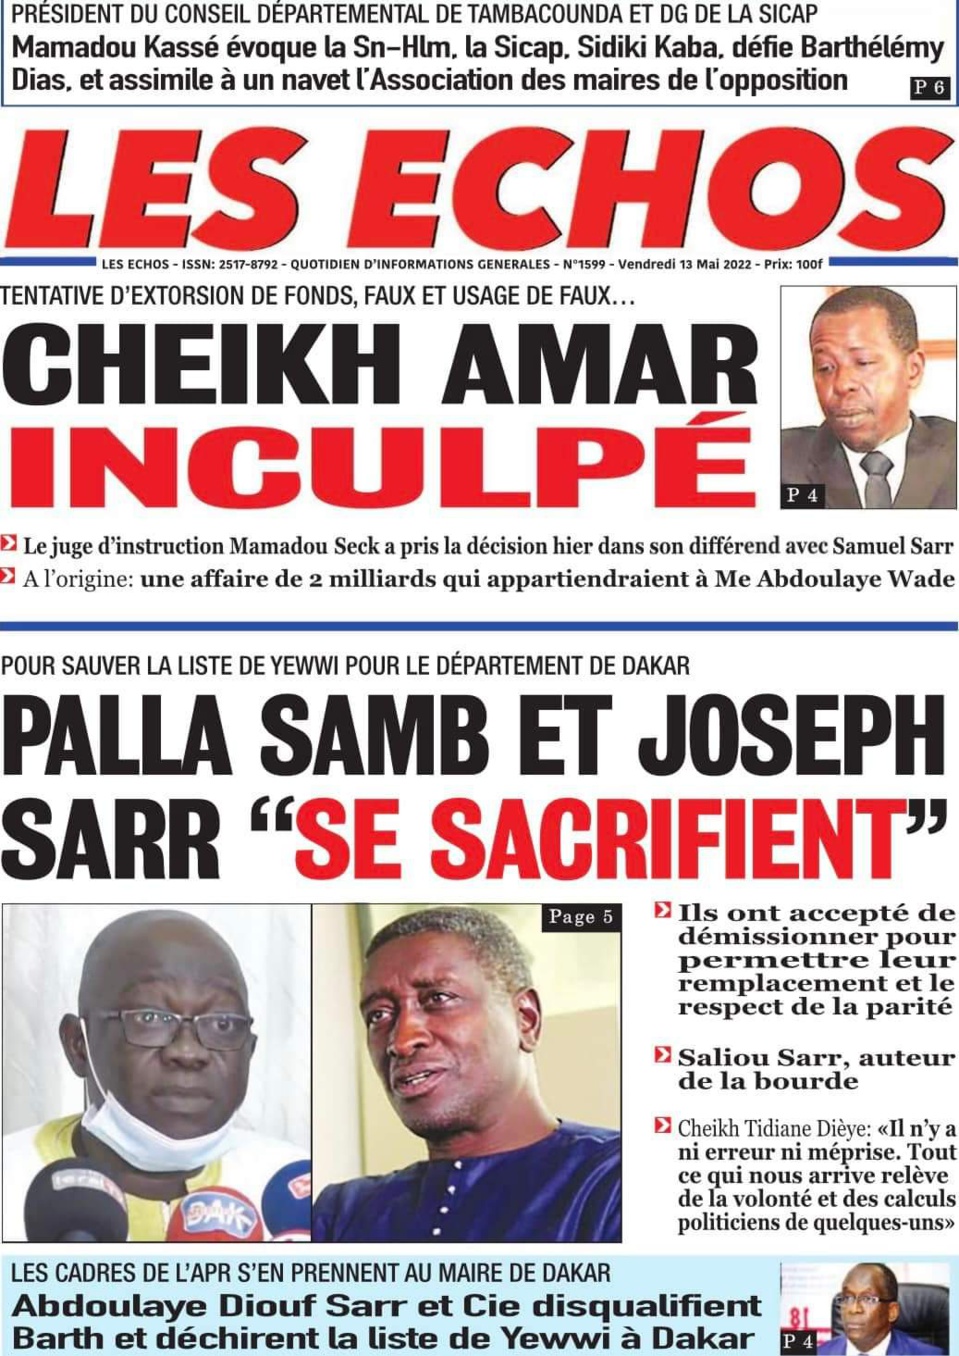 TENTATIVE D’EXTORSION DE FONDS, FAUX ET USAGE DE FAUX… : Cheikh Amar inculpé hier par le juge Mamadou Seck